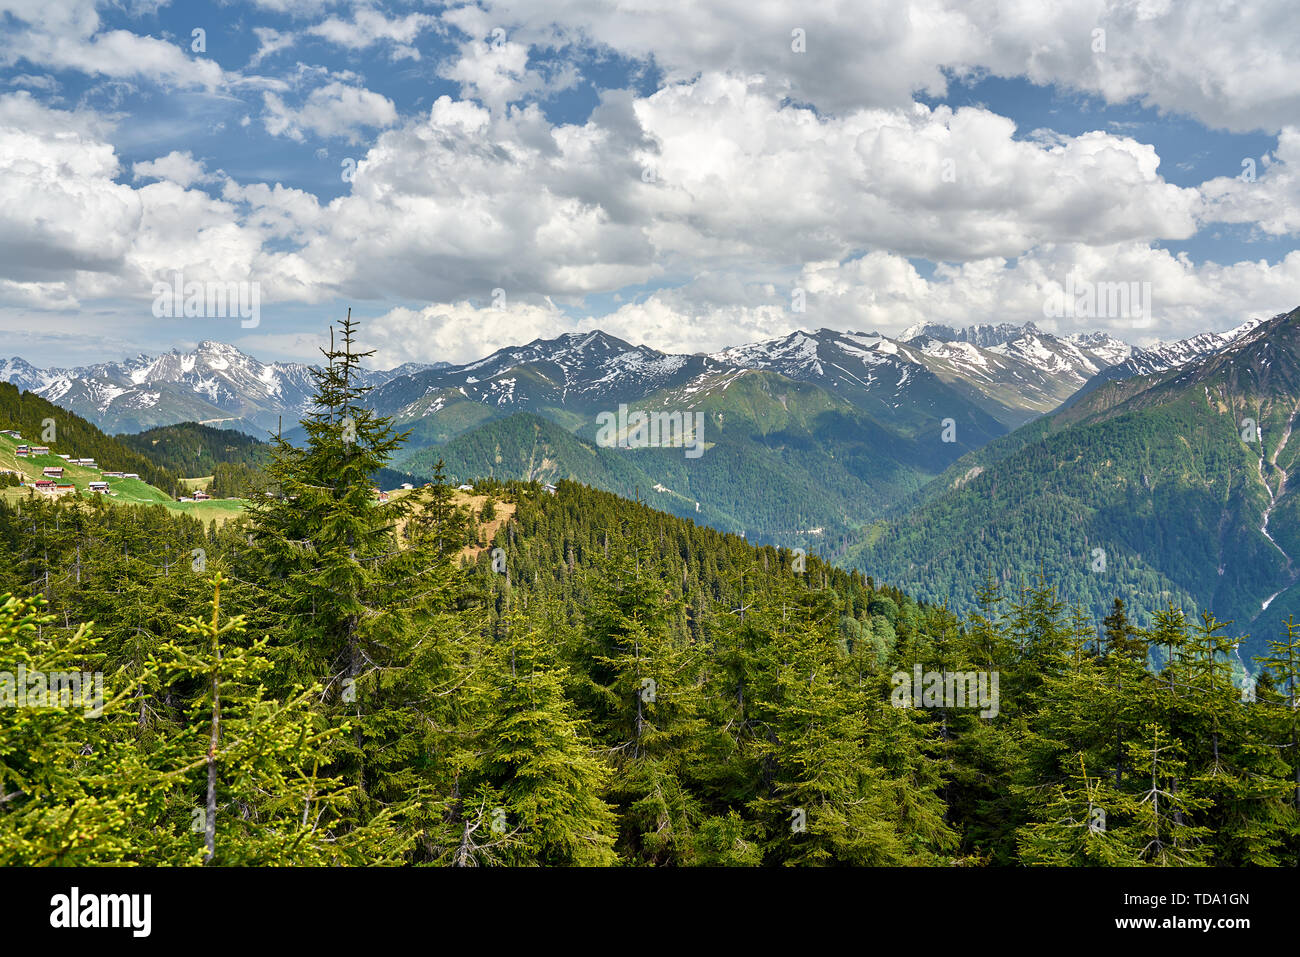 Montagnes enneigées de Kaçkar (Kackar) et pins. La photo du paysage a été prise au plateau de Sal, Rize, dans la région de Karadeniz (mer Noire) du nord-est de la Turquie. Banque D'Images